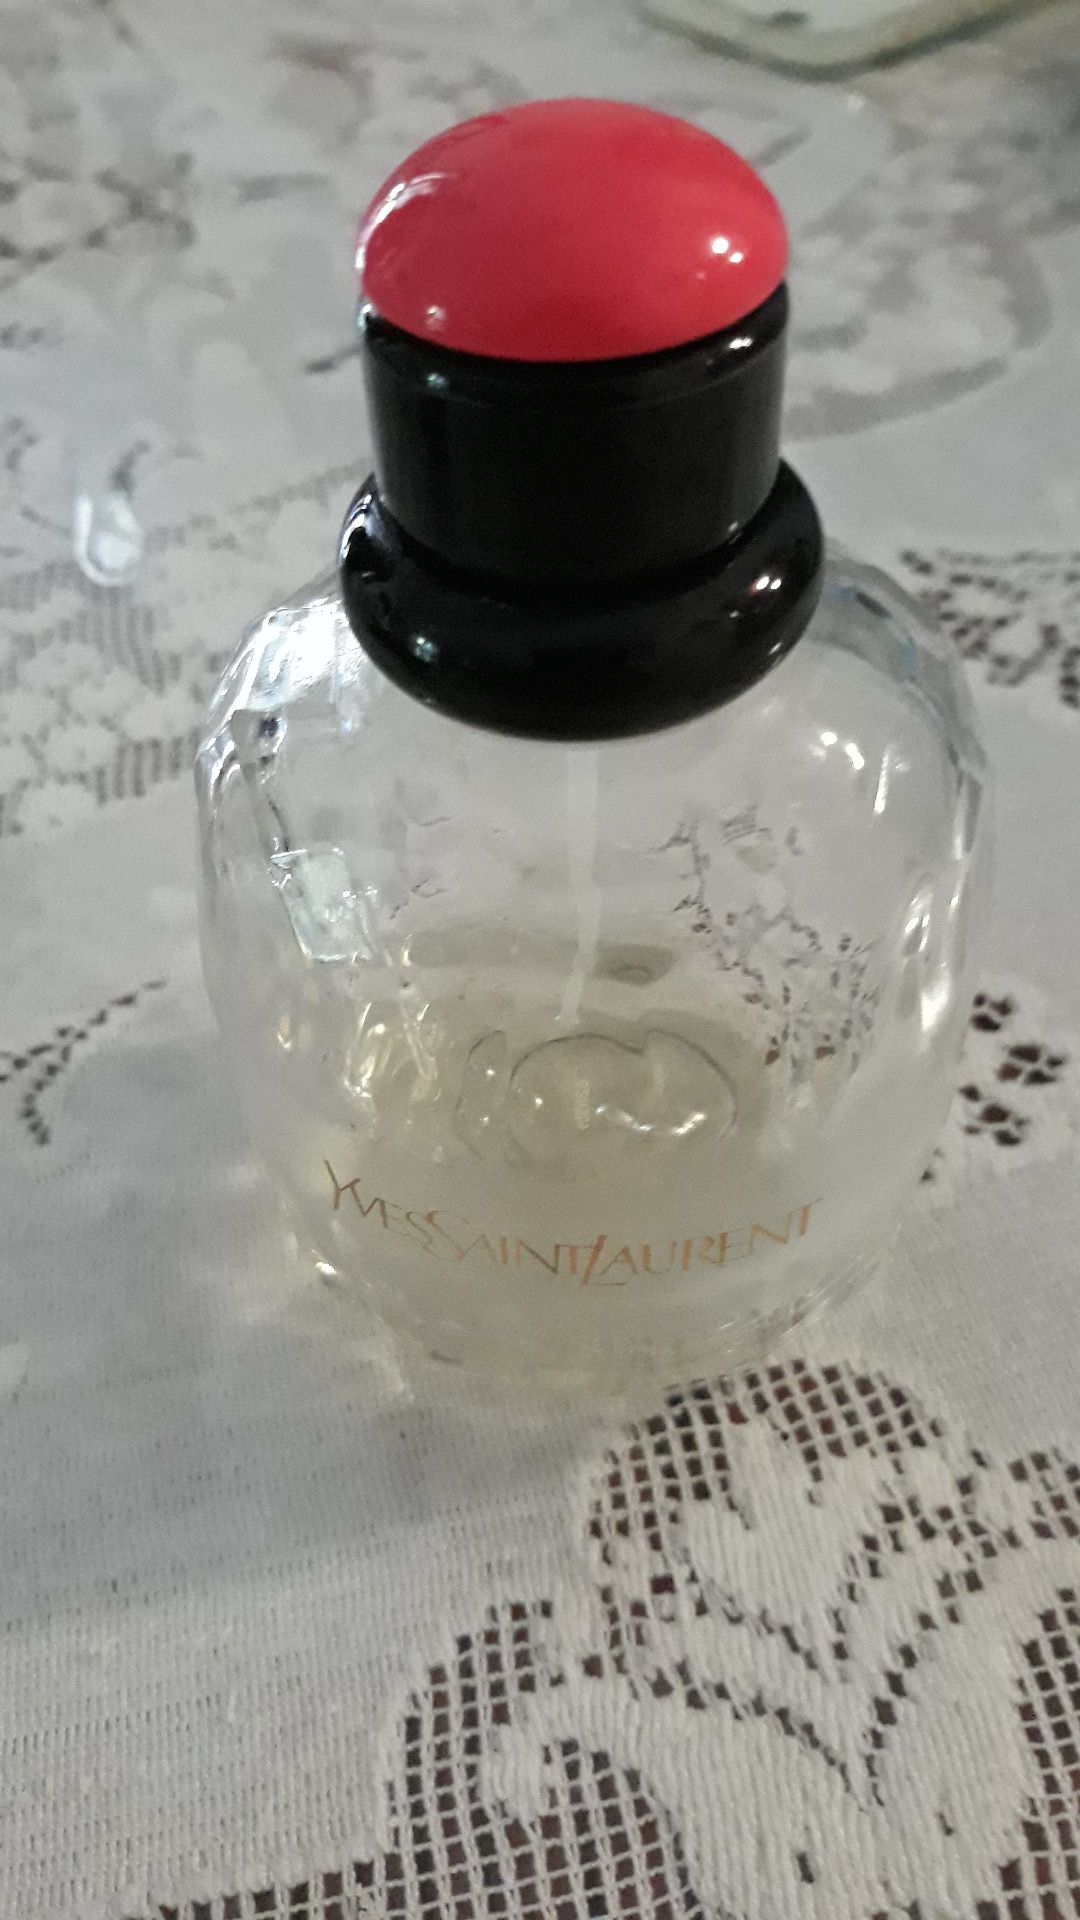 Yves st Laurent perfume